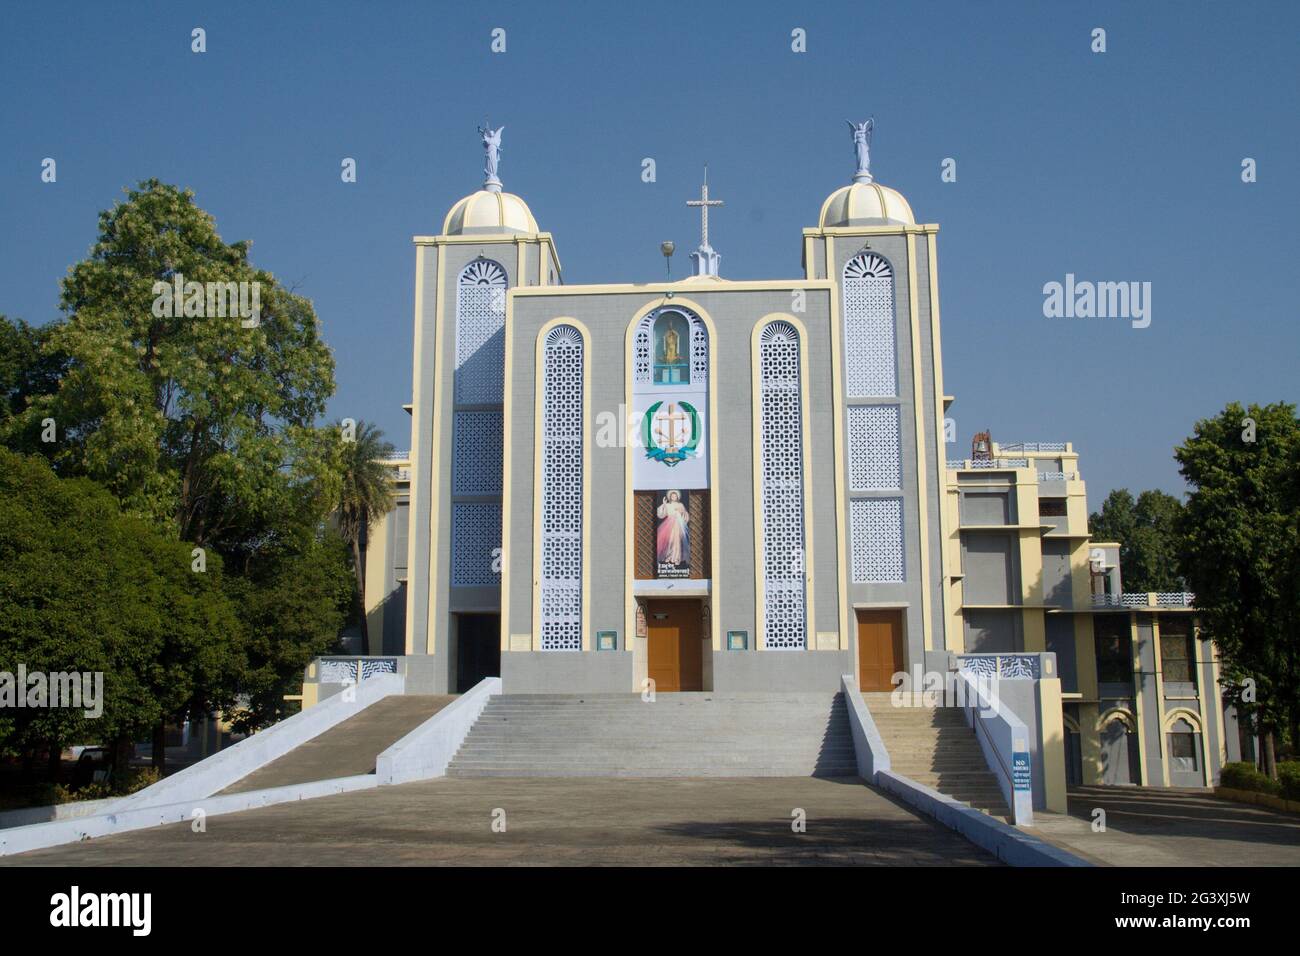 Facade of Church at Jhansi Stock Photo